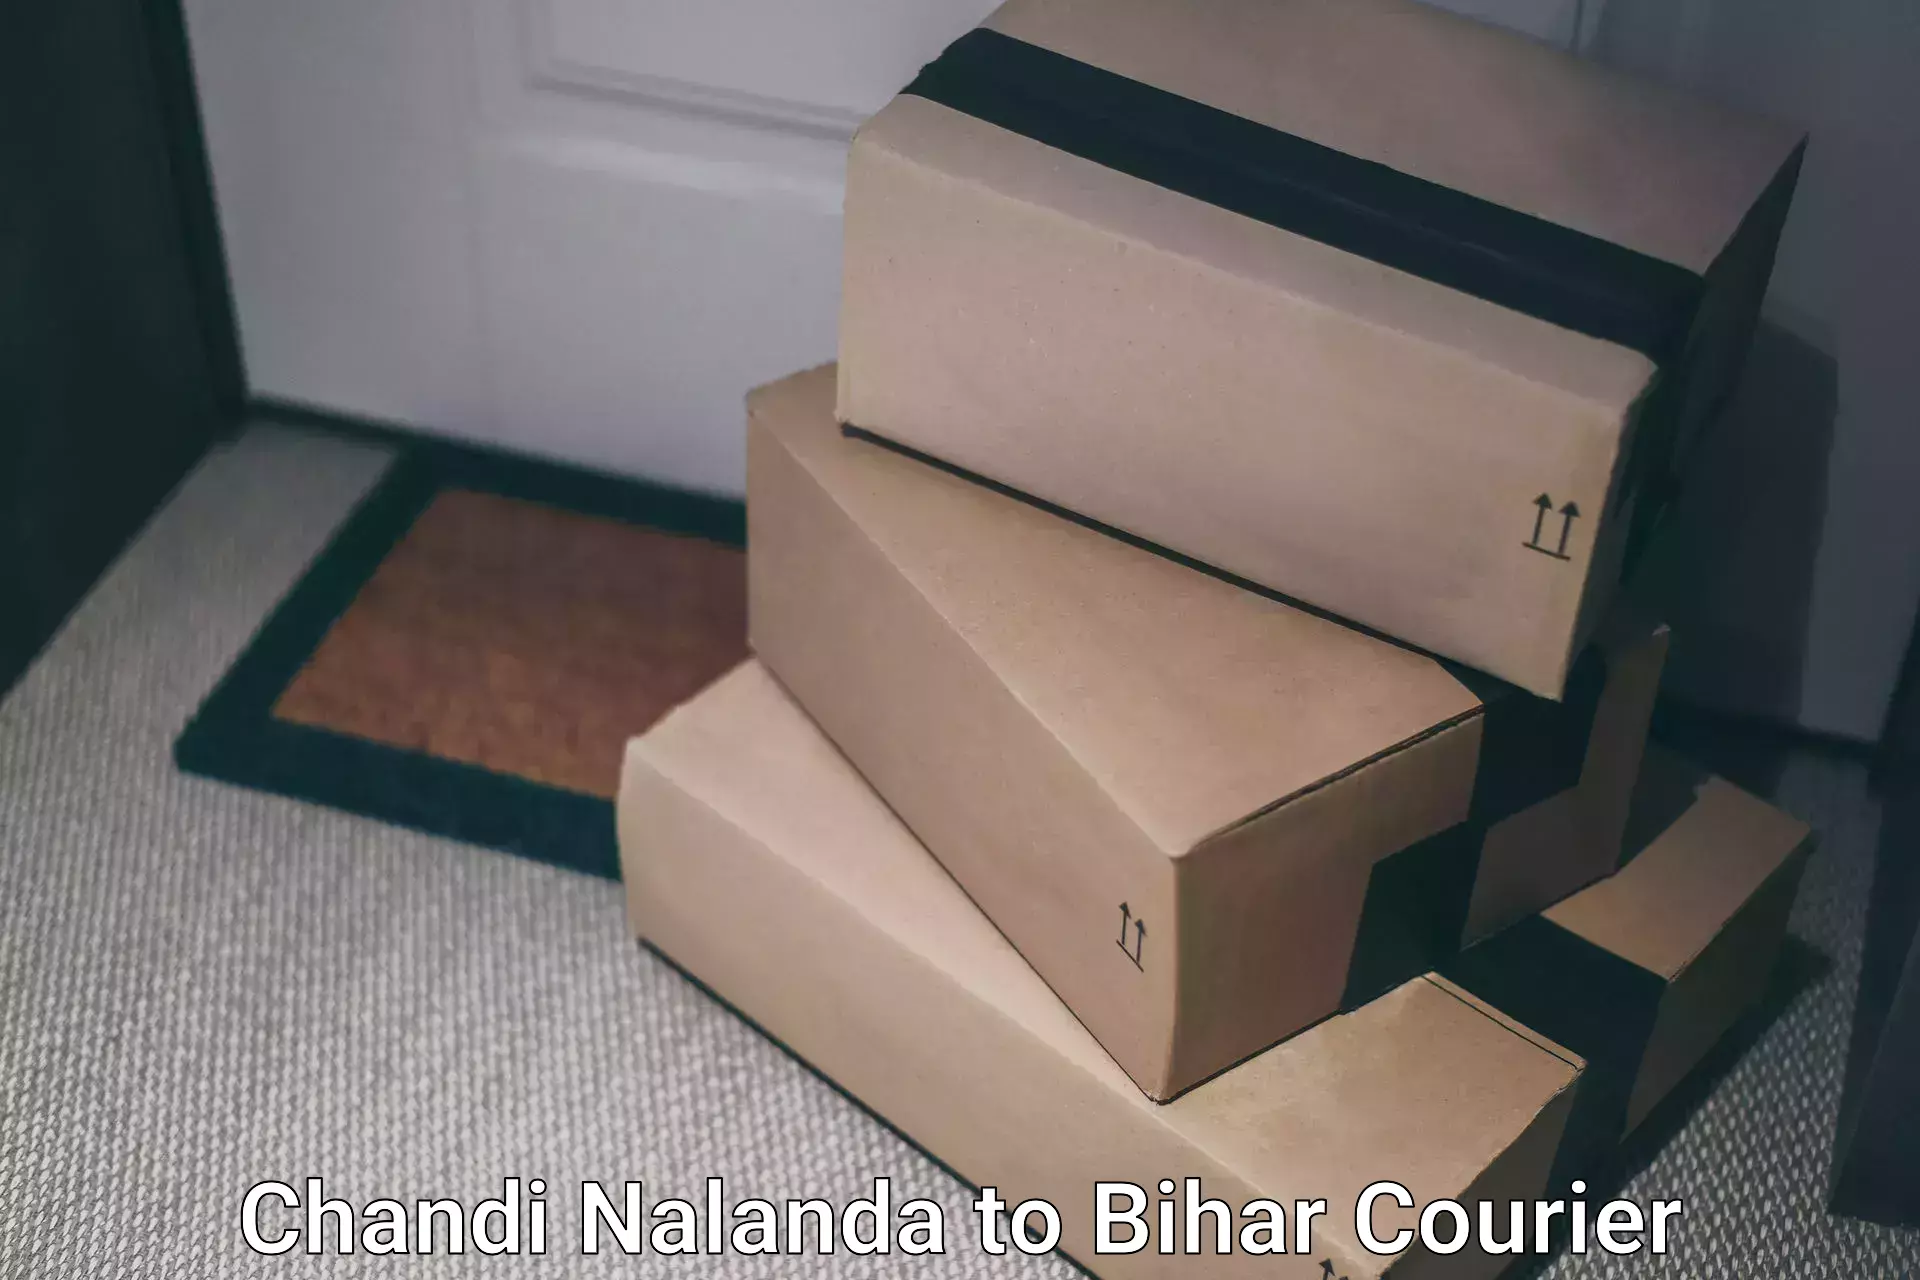 Seamless shipping service Chandi Nalanda to Punsia